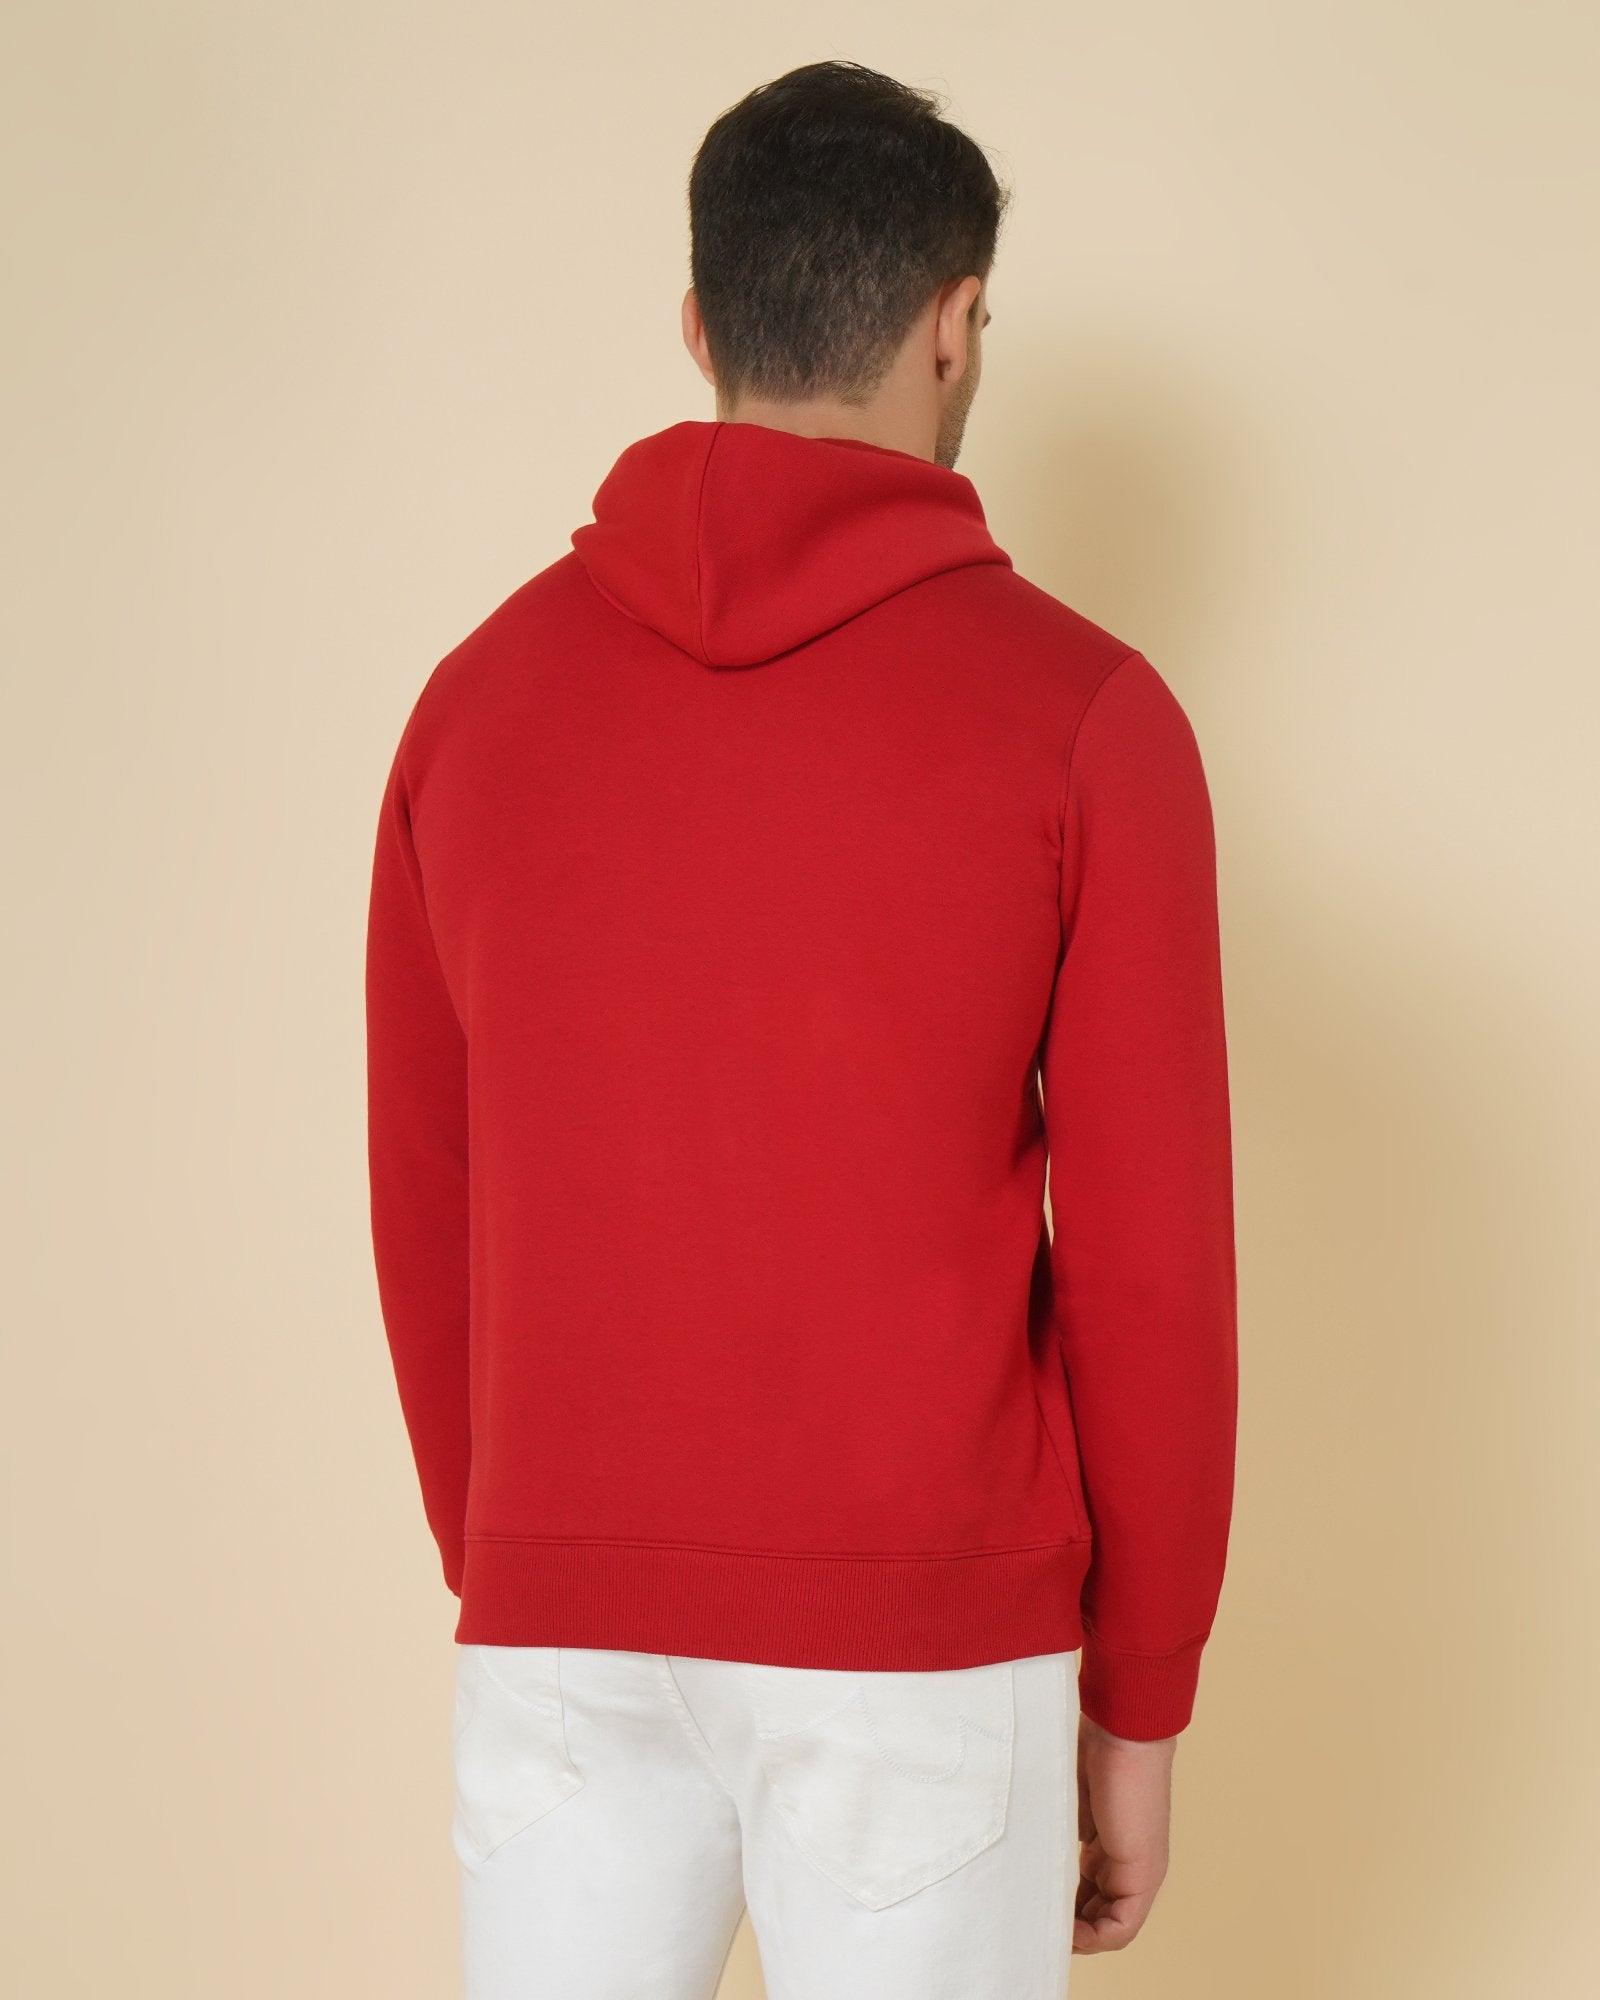 Hoodie Red Printed Sweatshirt - Auk